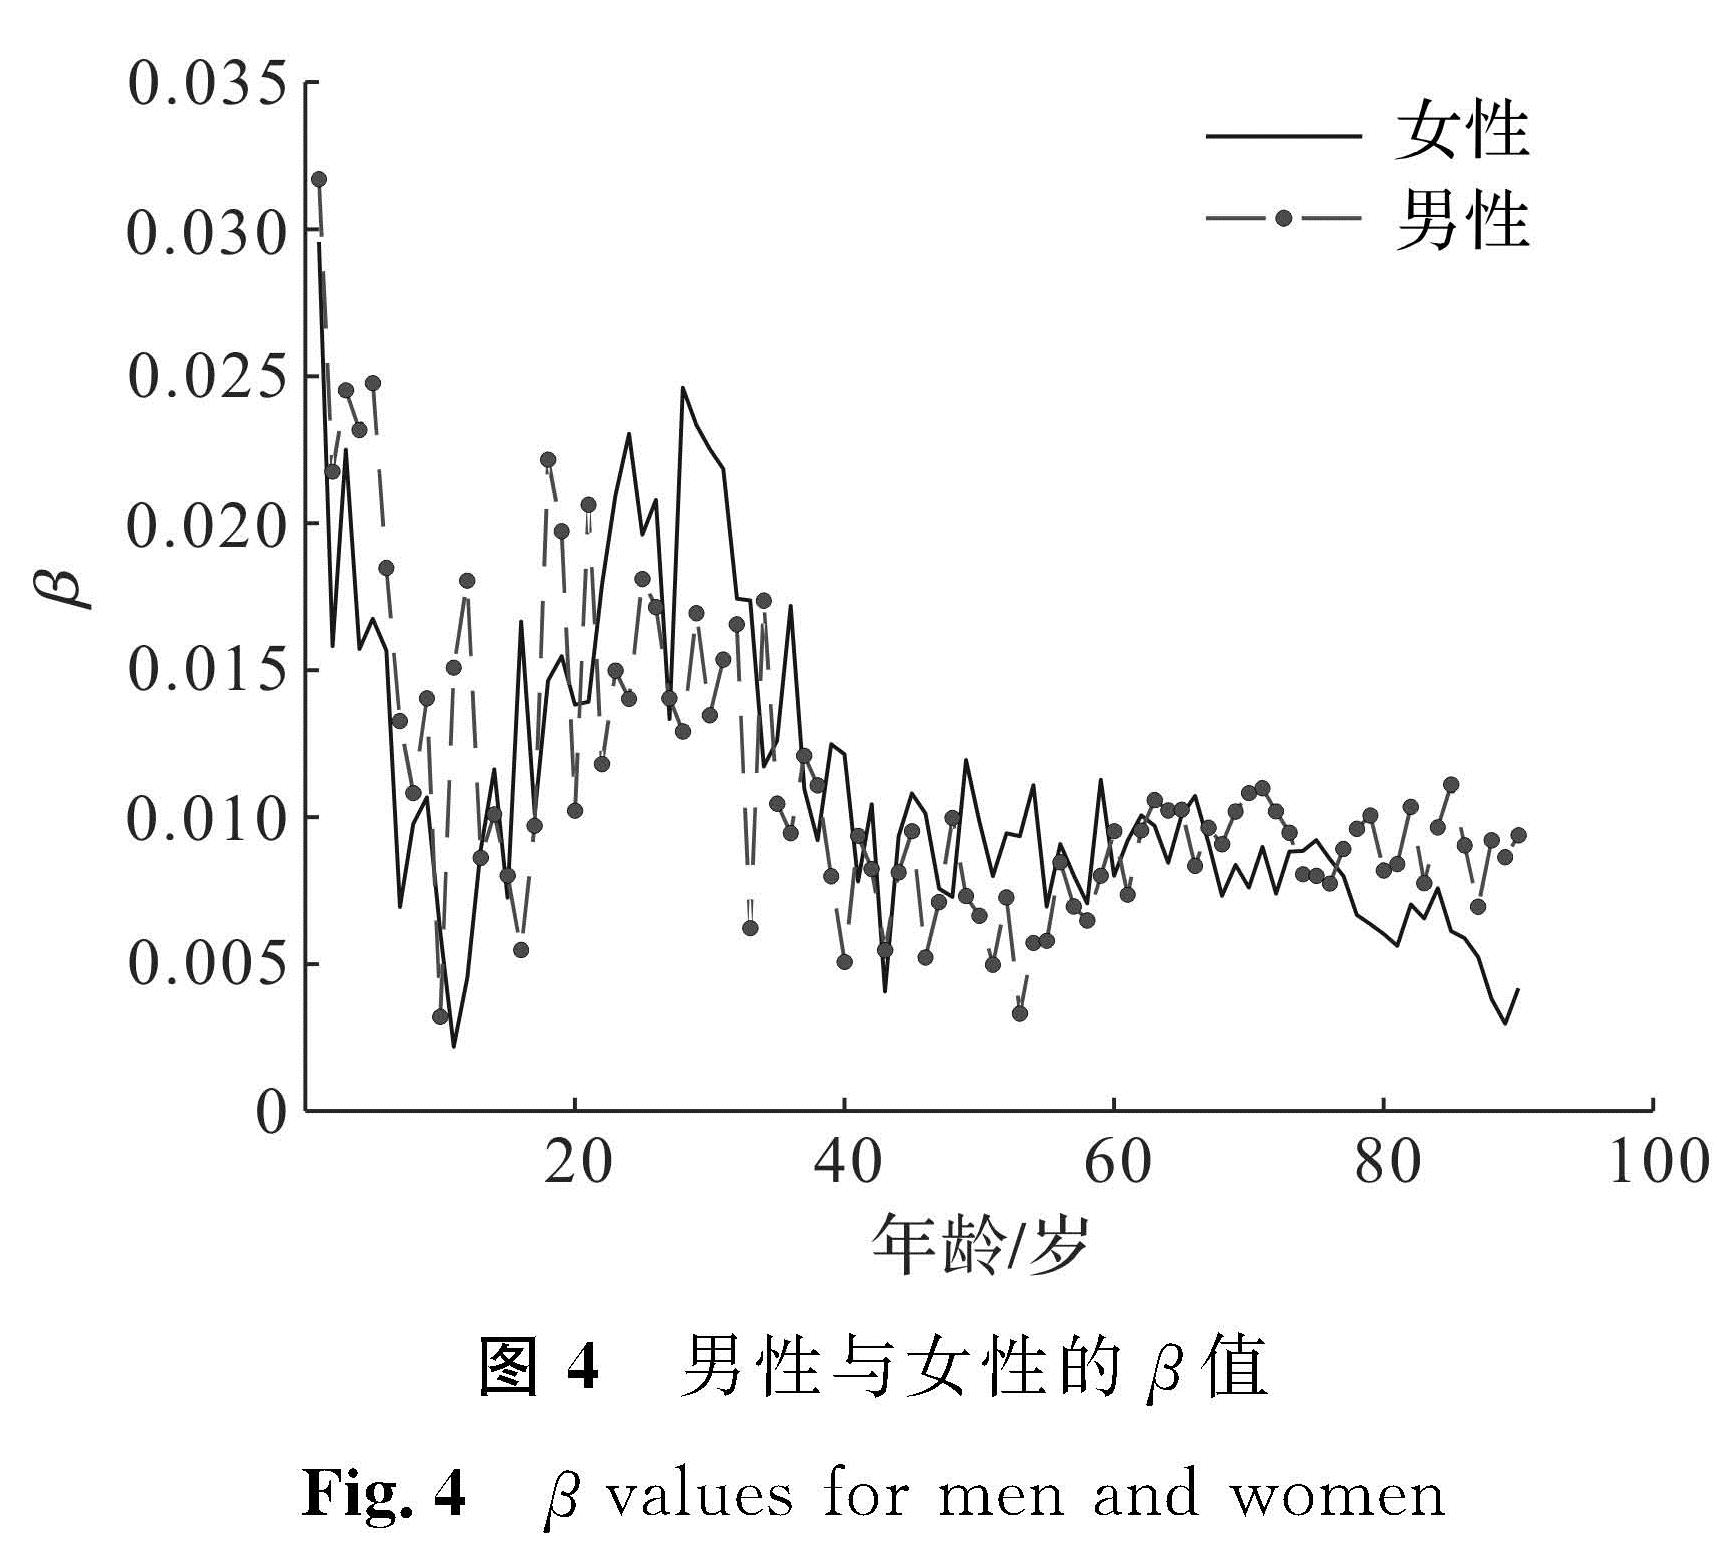 图4 男性与女性的β值<br/>Fig.4 β values for men and women